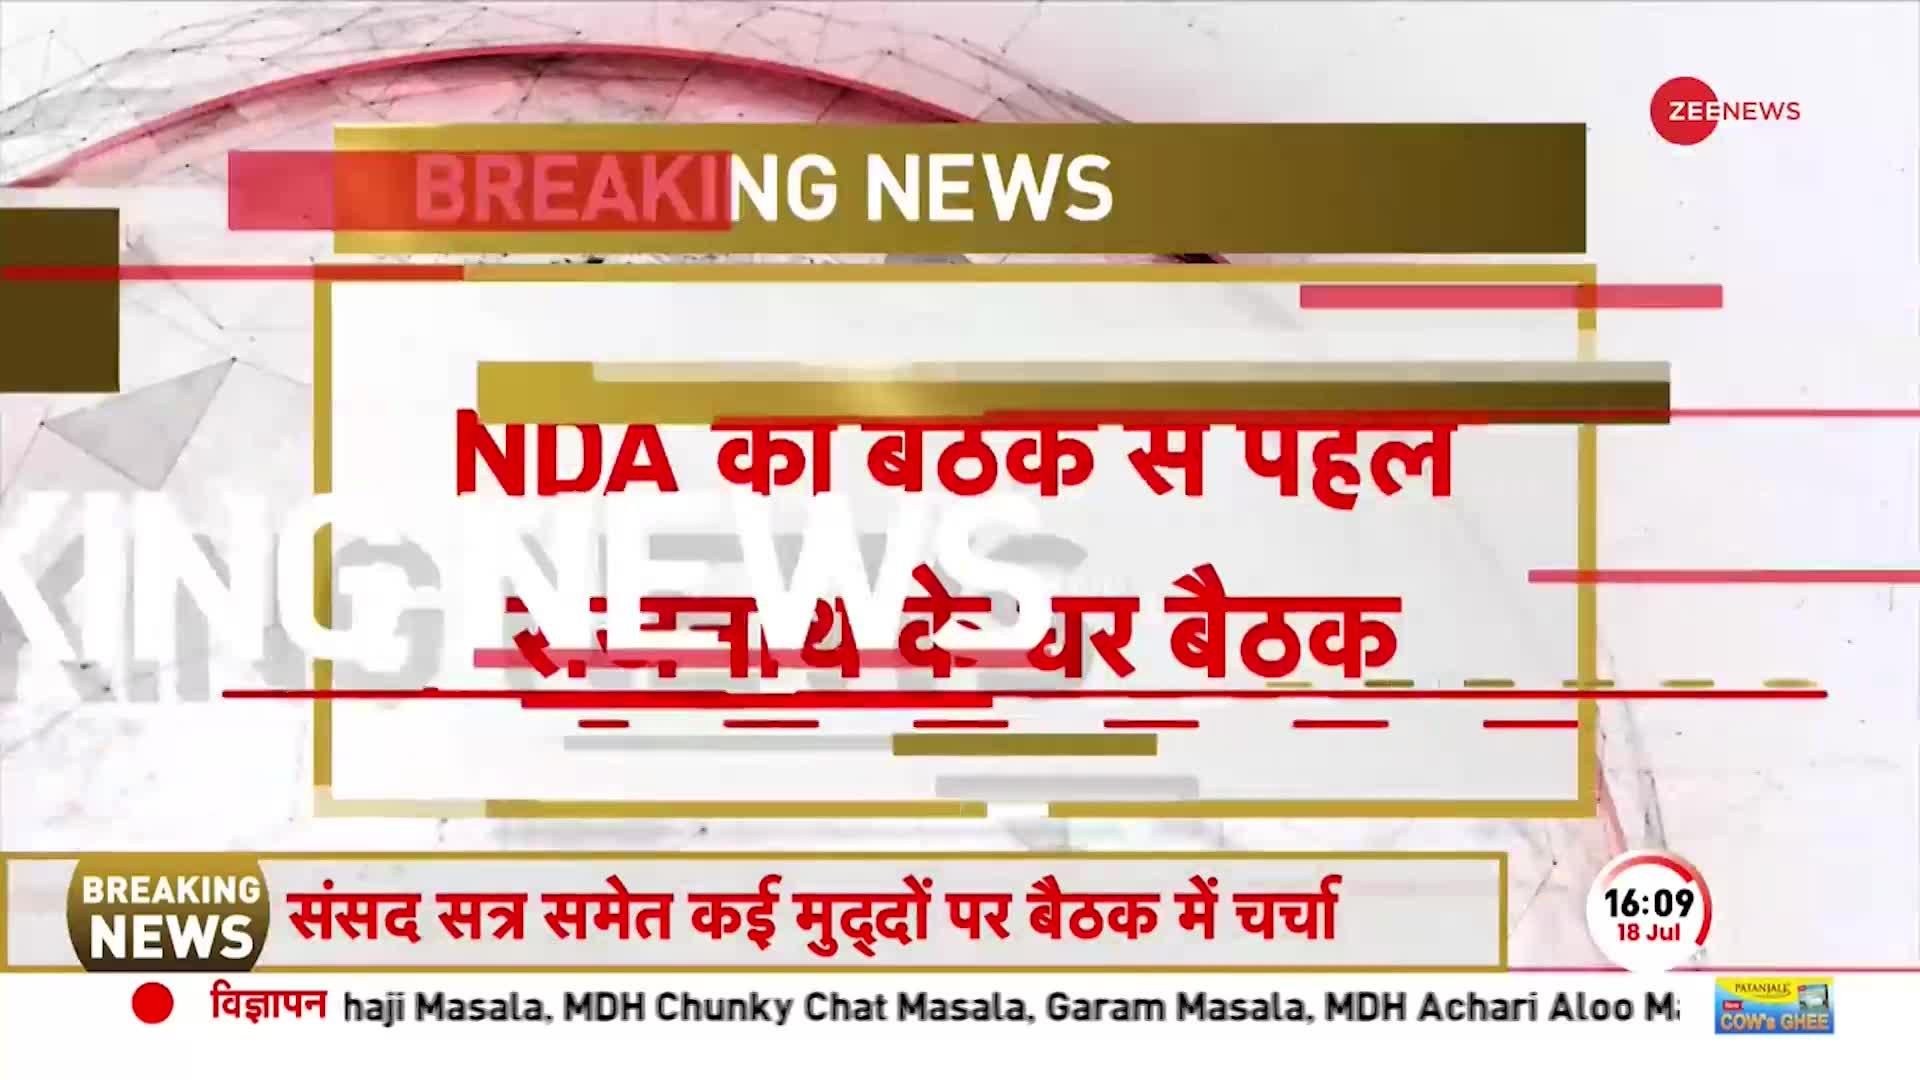 BREAKING NEWS: NDA की बैठक से पहले आज Rajnath Singh के घर नेताओं की बैठक, जानें कौन-कौन होगा शामिल?